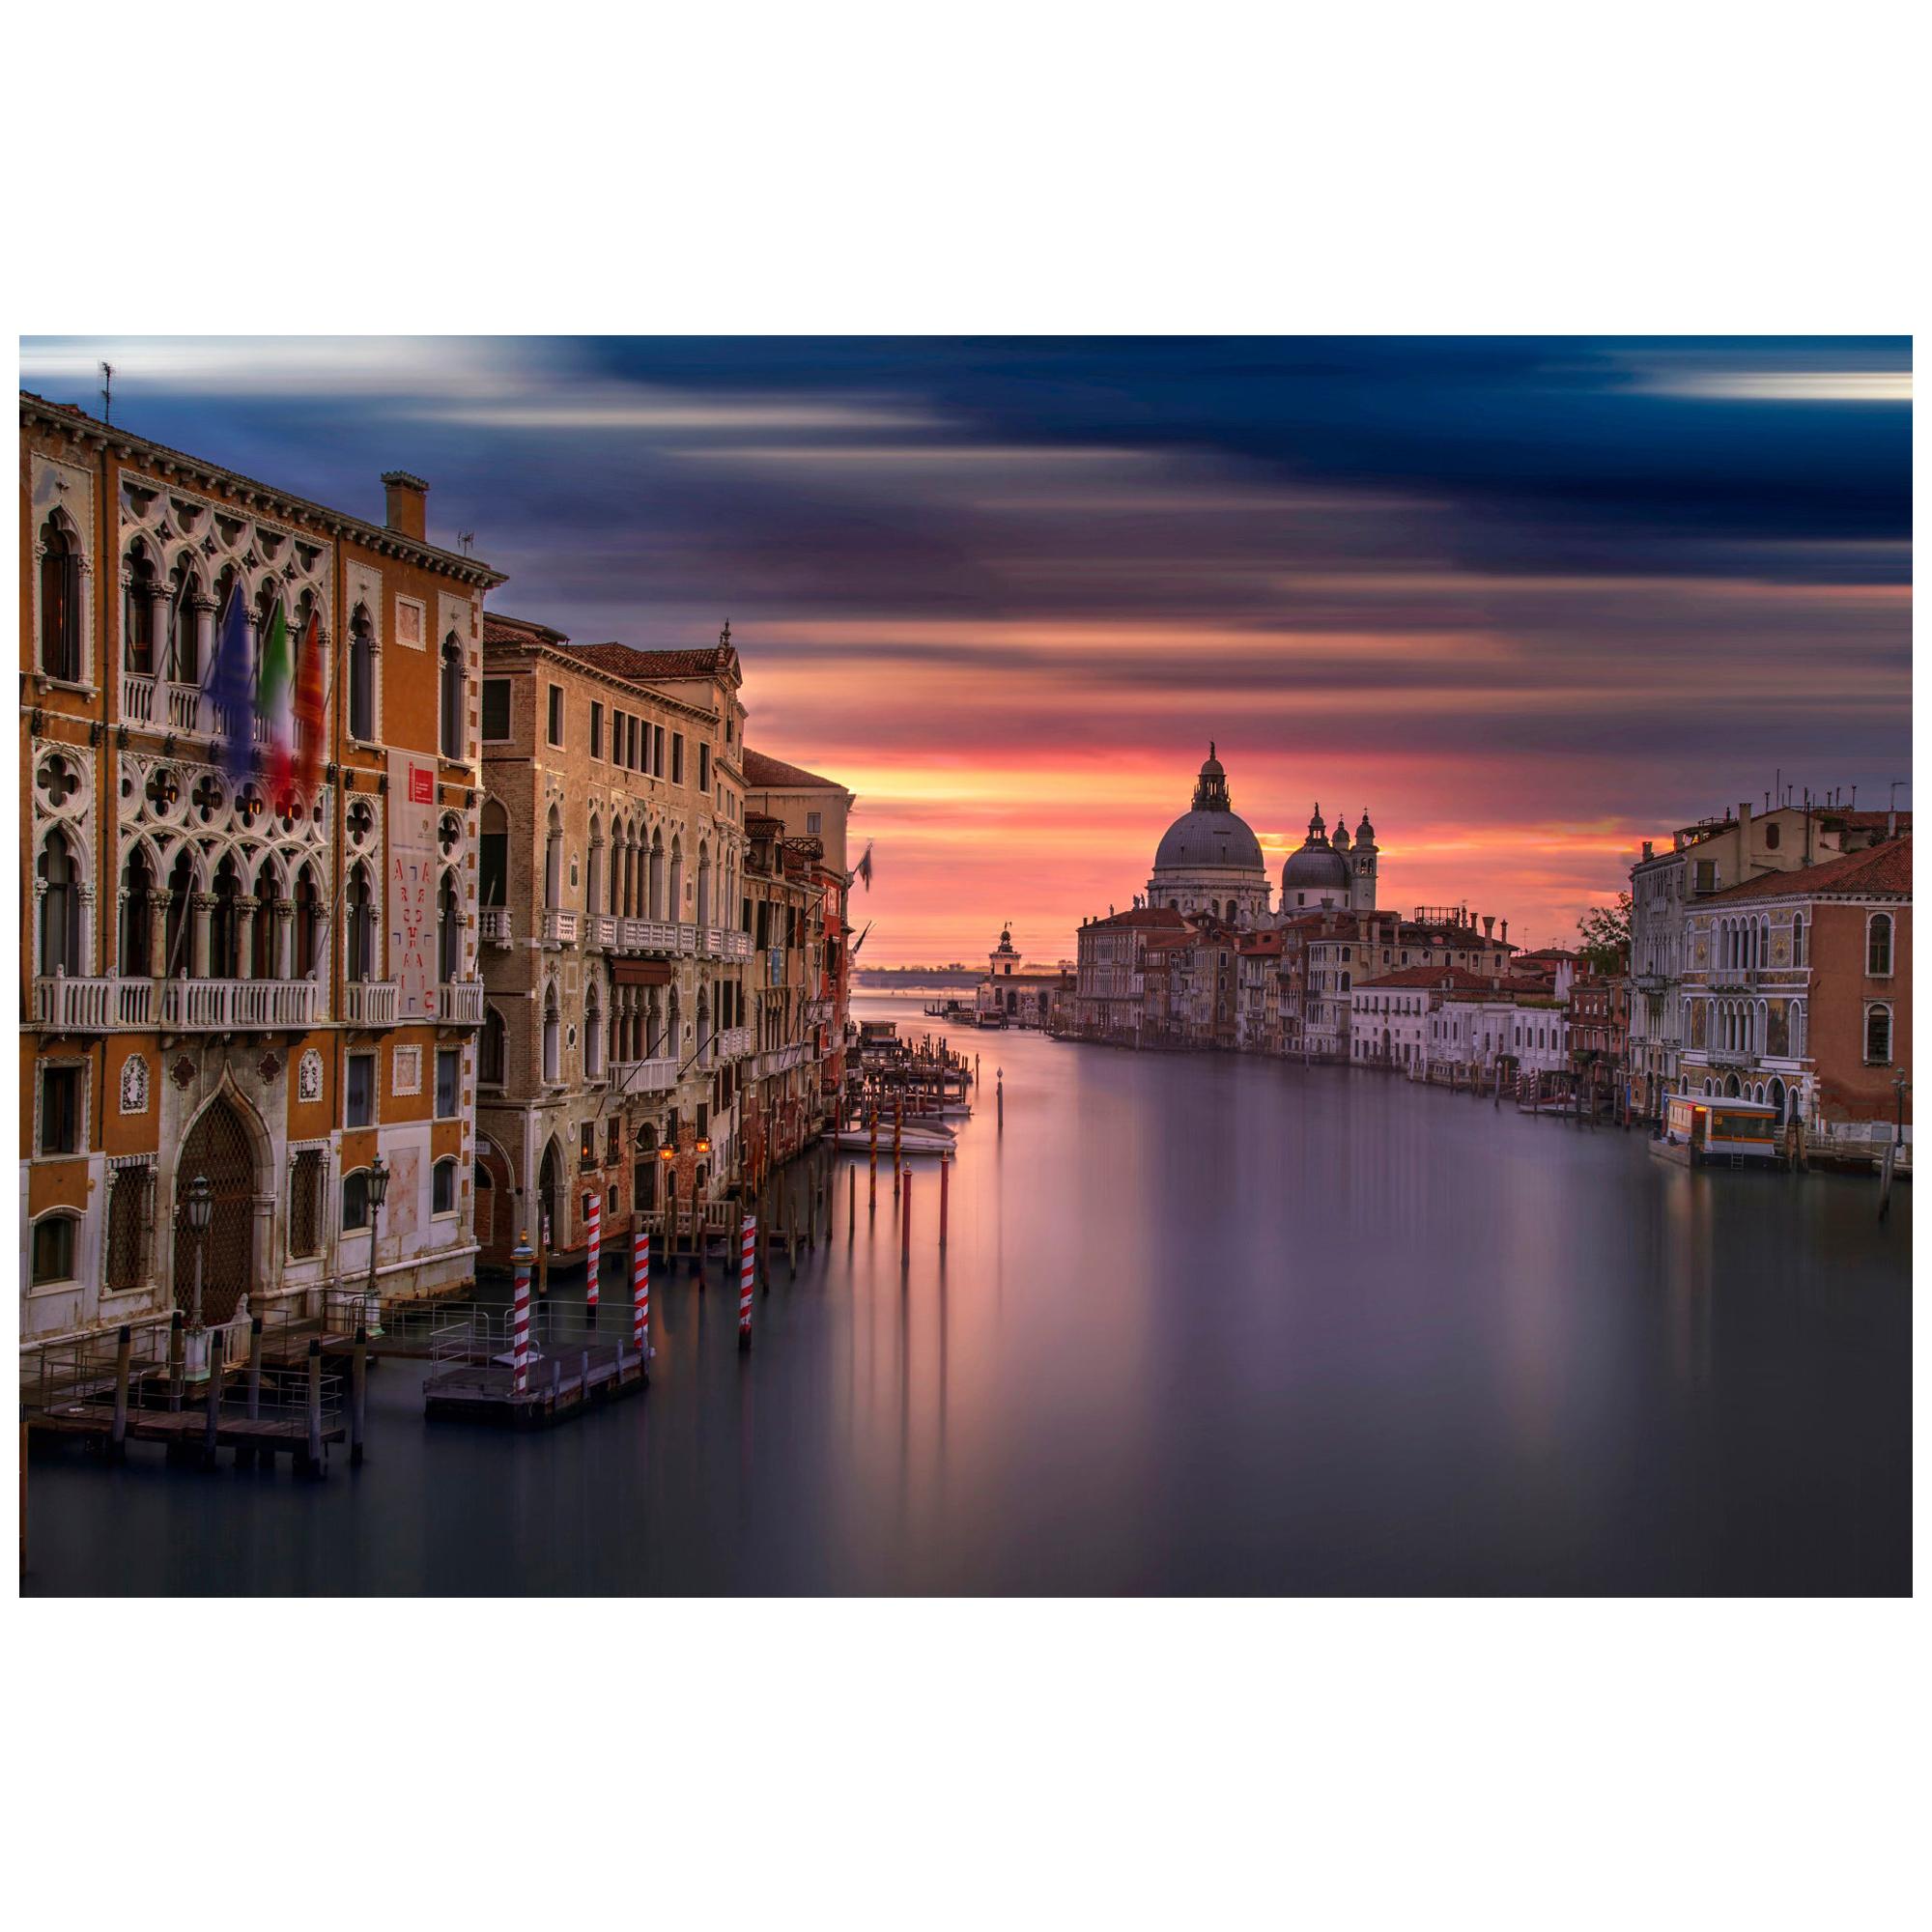 Venice Sunrise Farbfotografie, Druck der bildenden Kunst von Rainer Martini